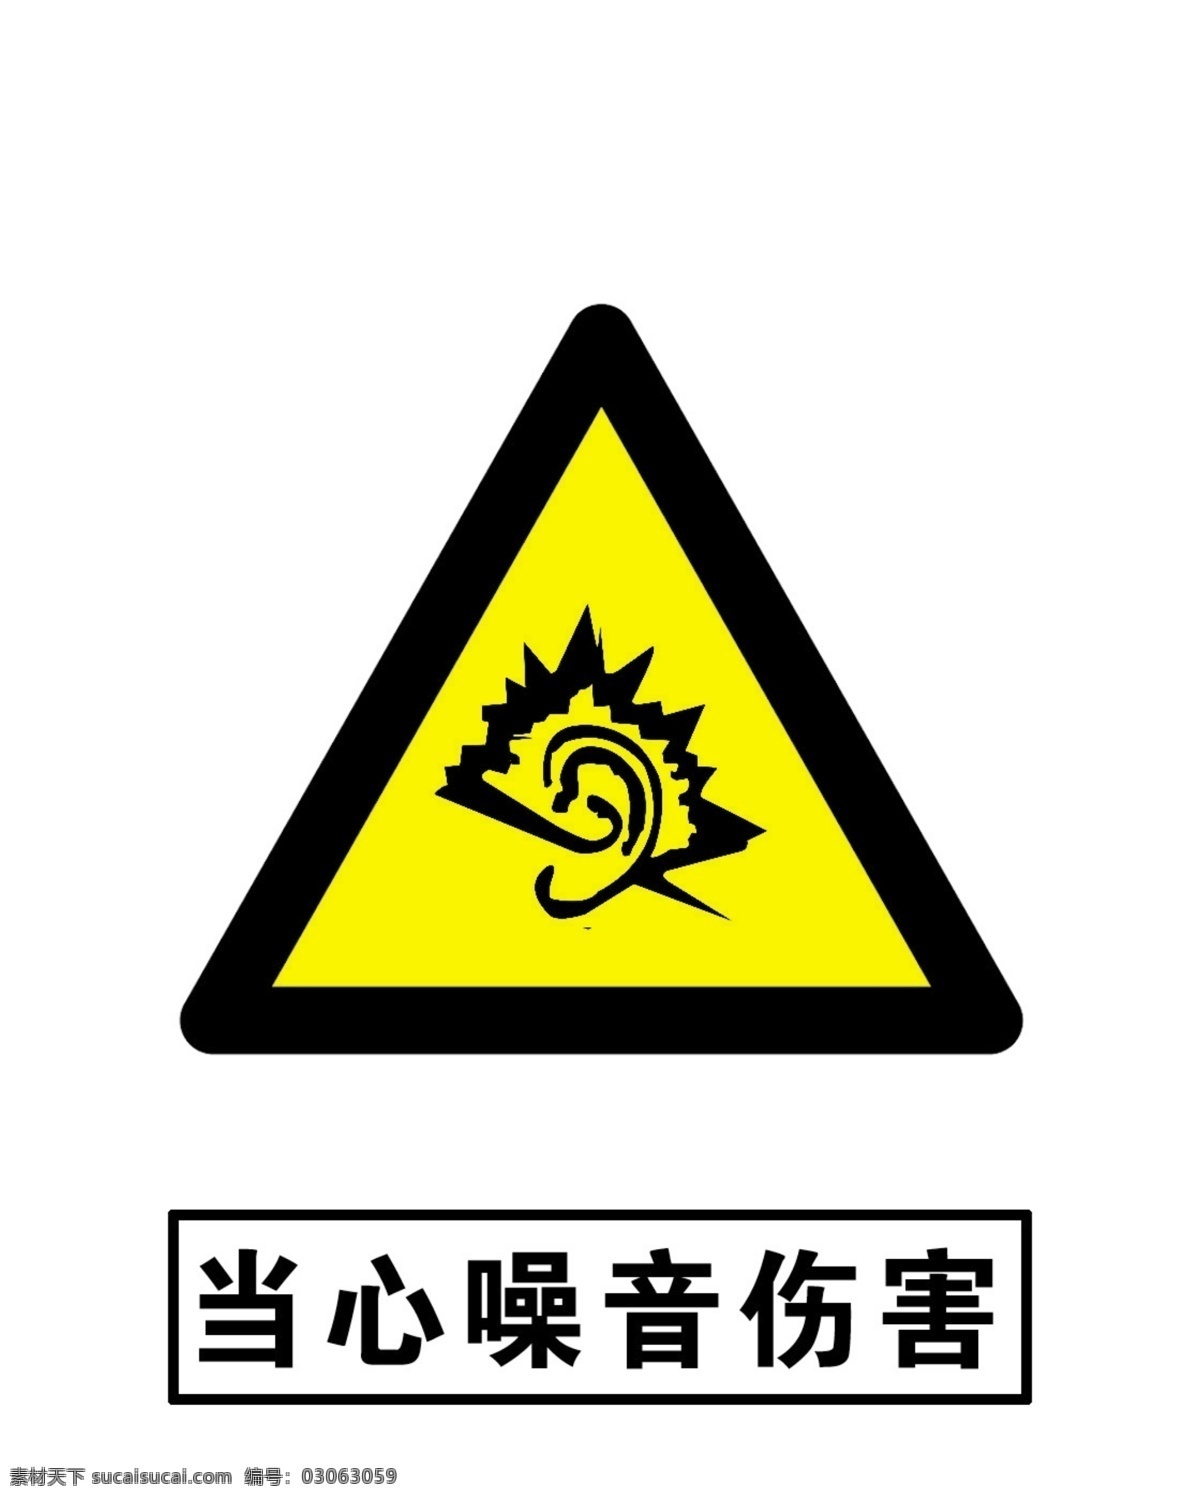 当心噪音伤害 当心 噪音 伤害 安全 警示 标语 安全警示标牌